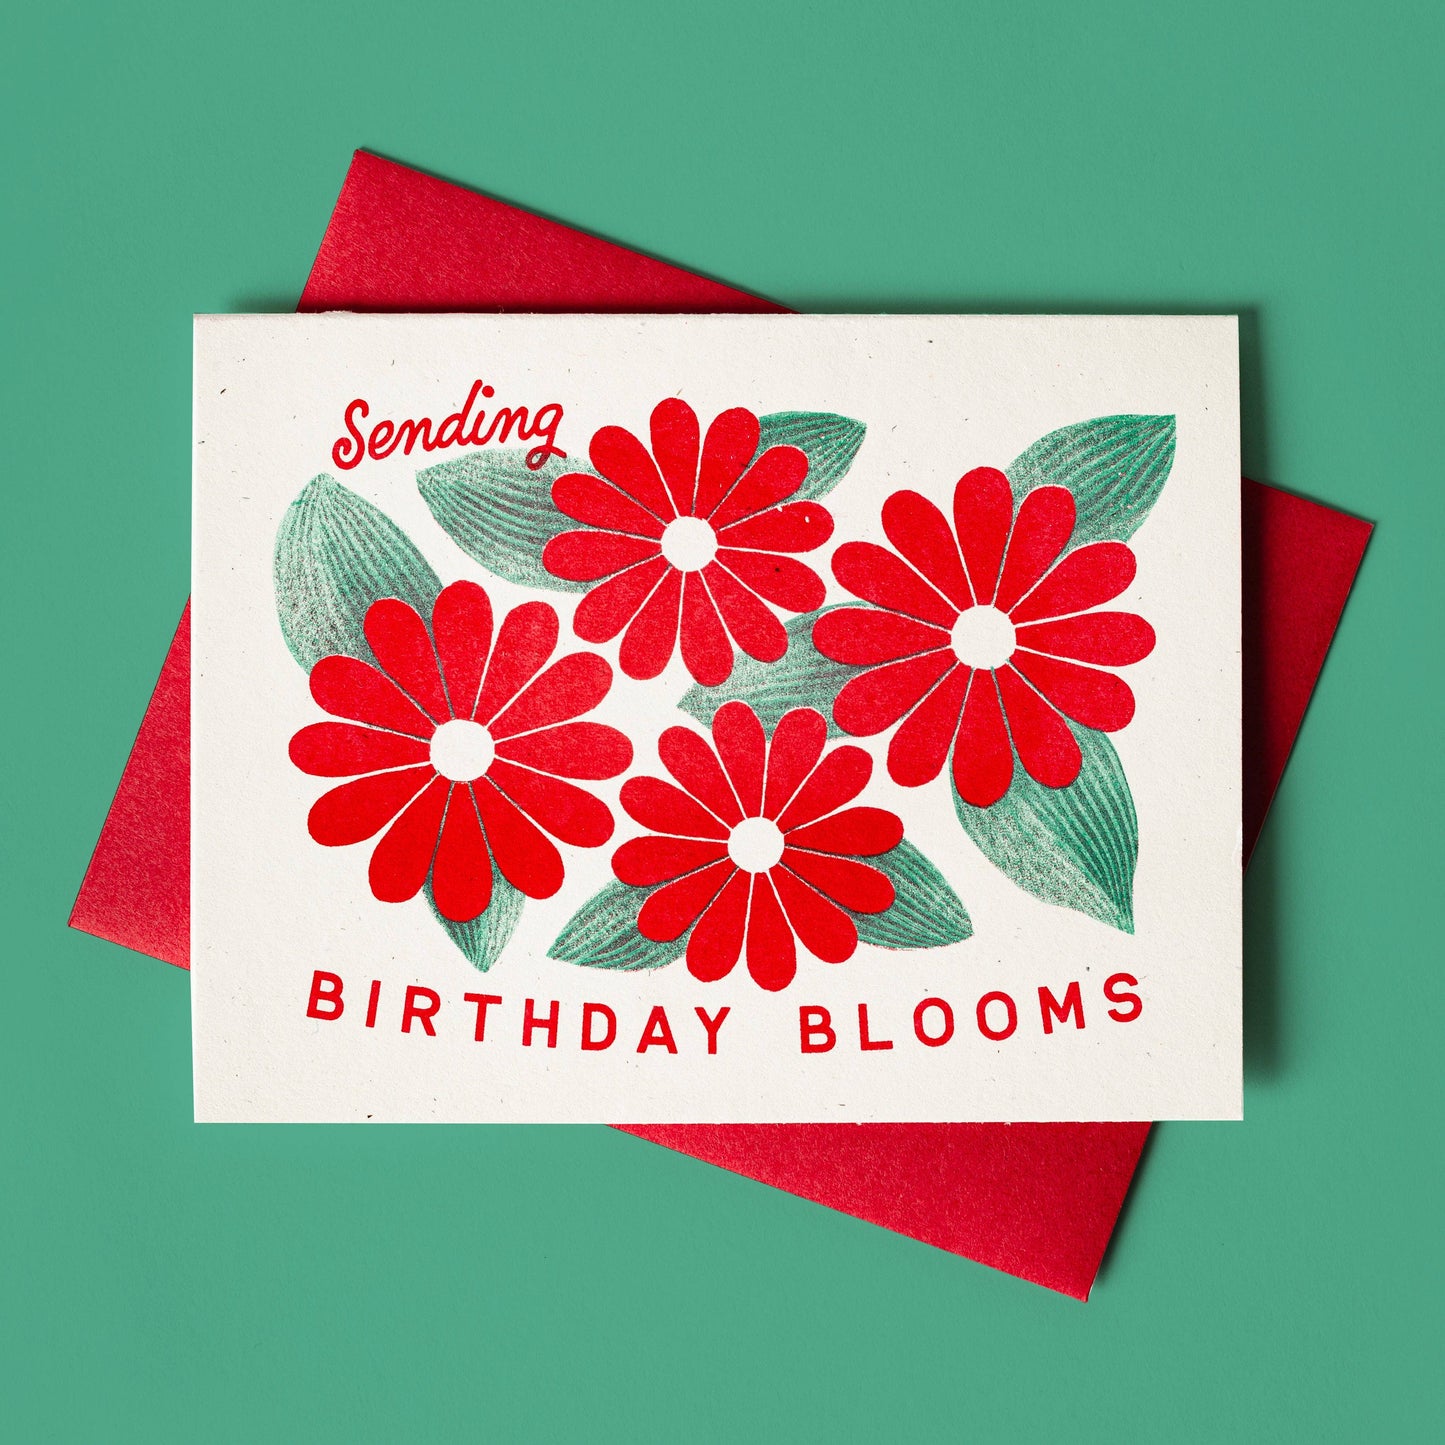 Sending Birthday Blooms Card